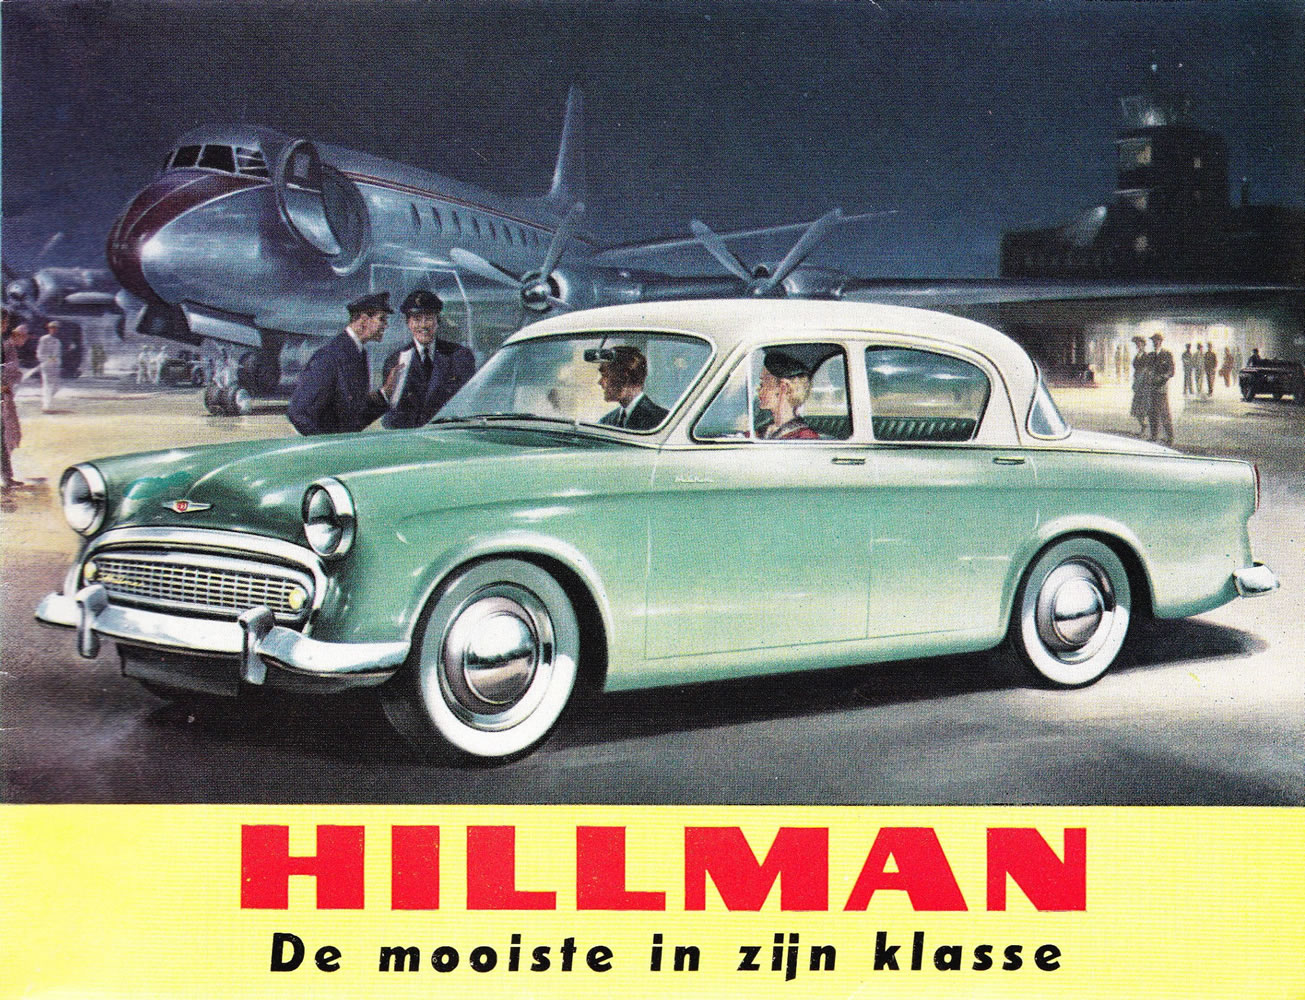 HILLMAN MINX Series I SALES BROCHURE cover 1956